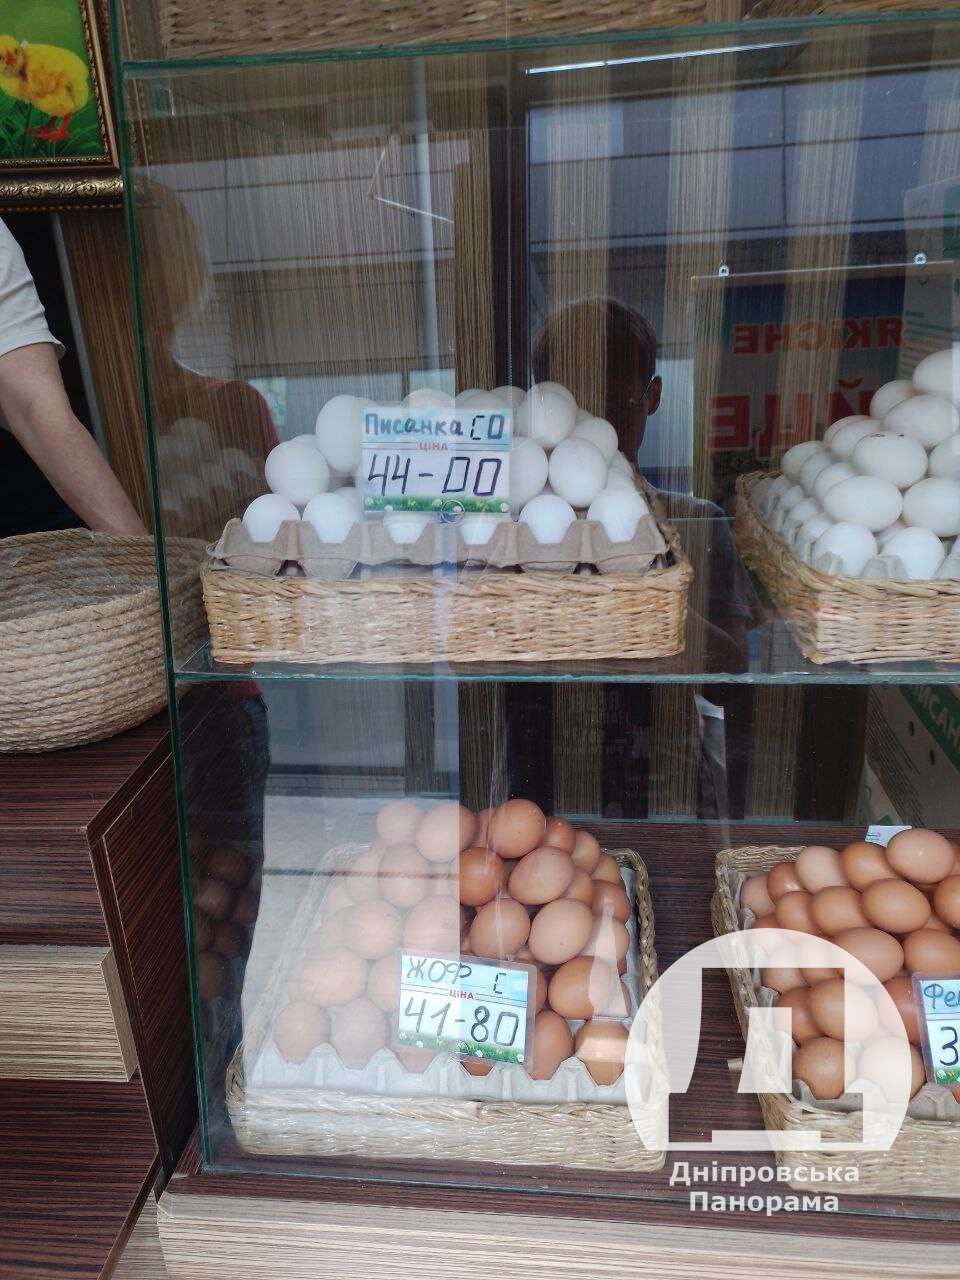 цены на яйца